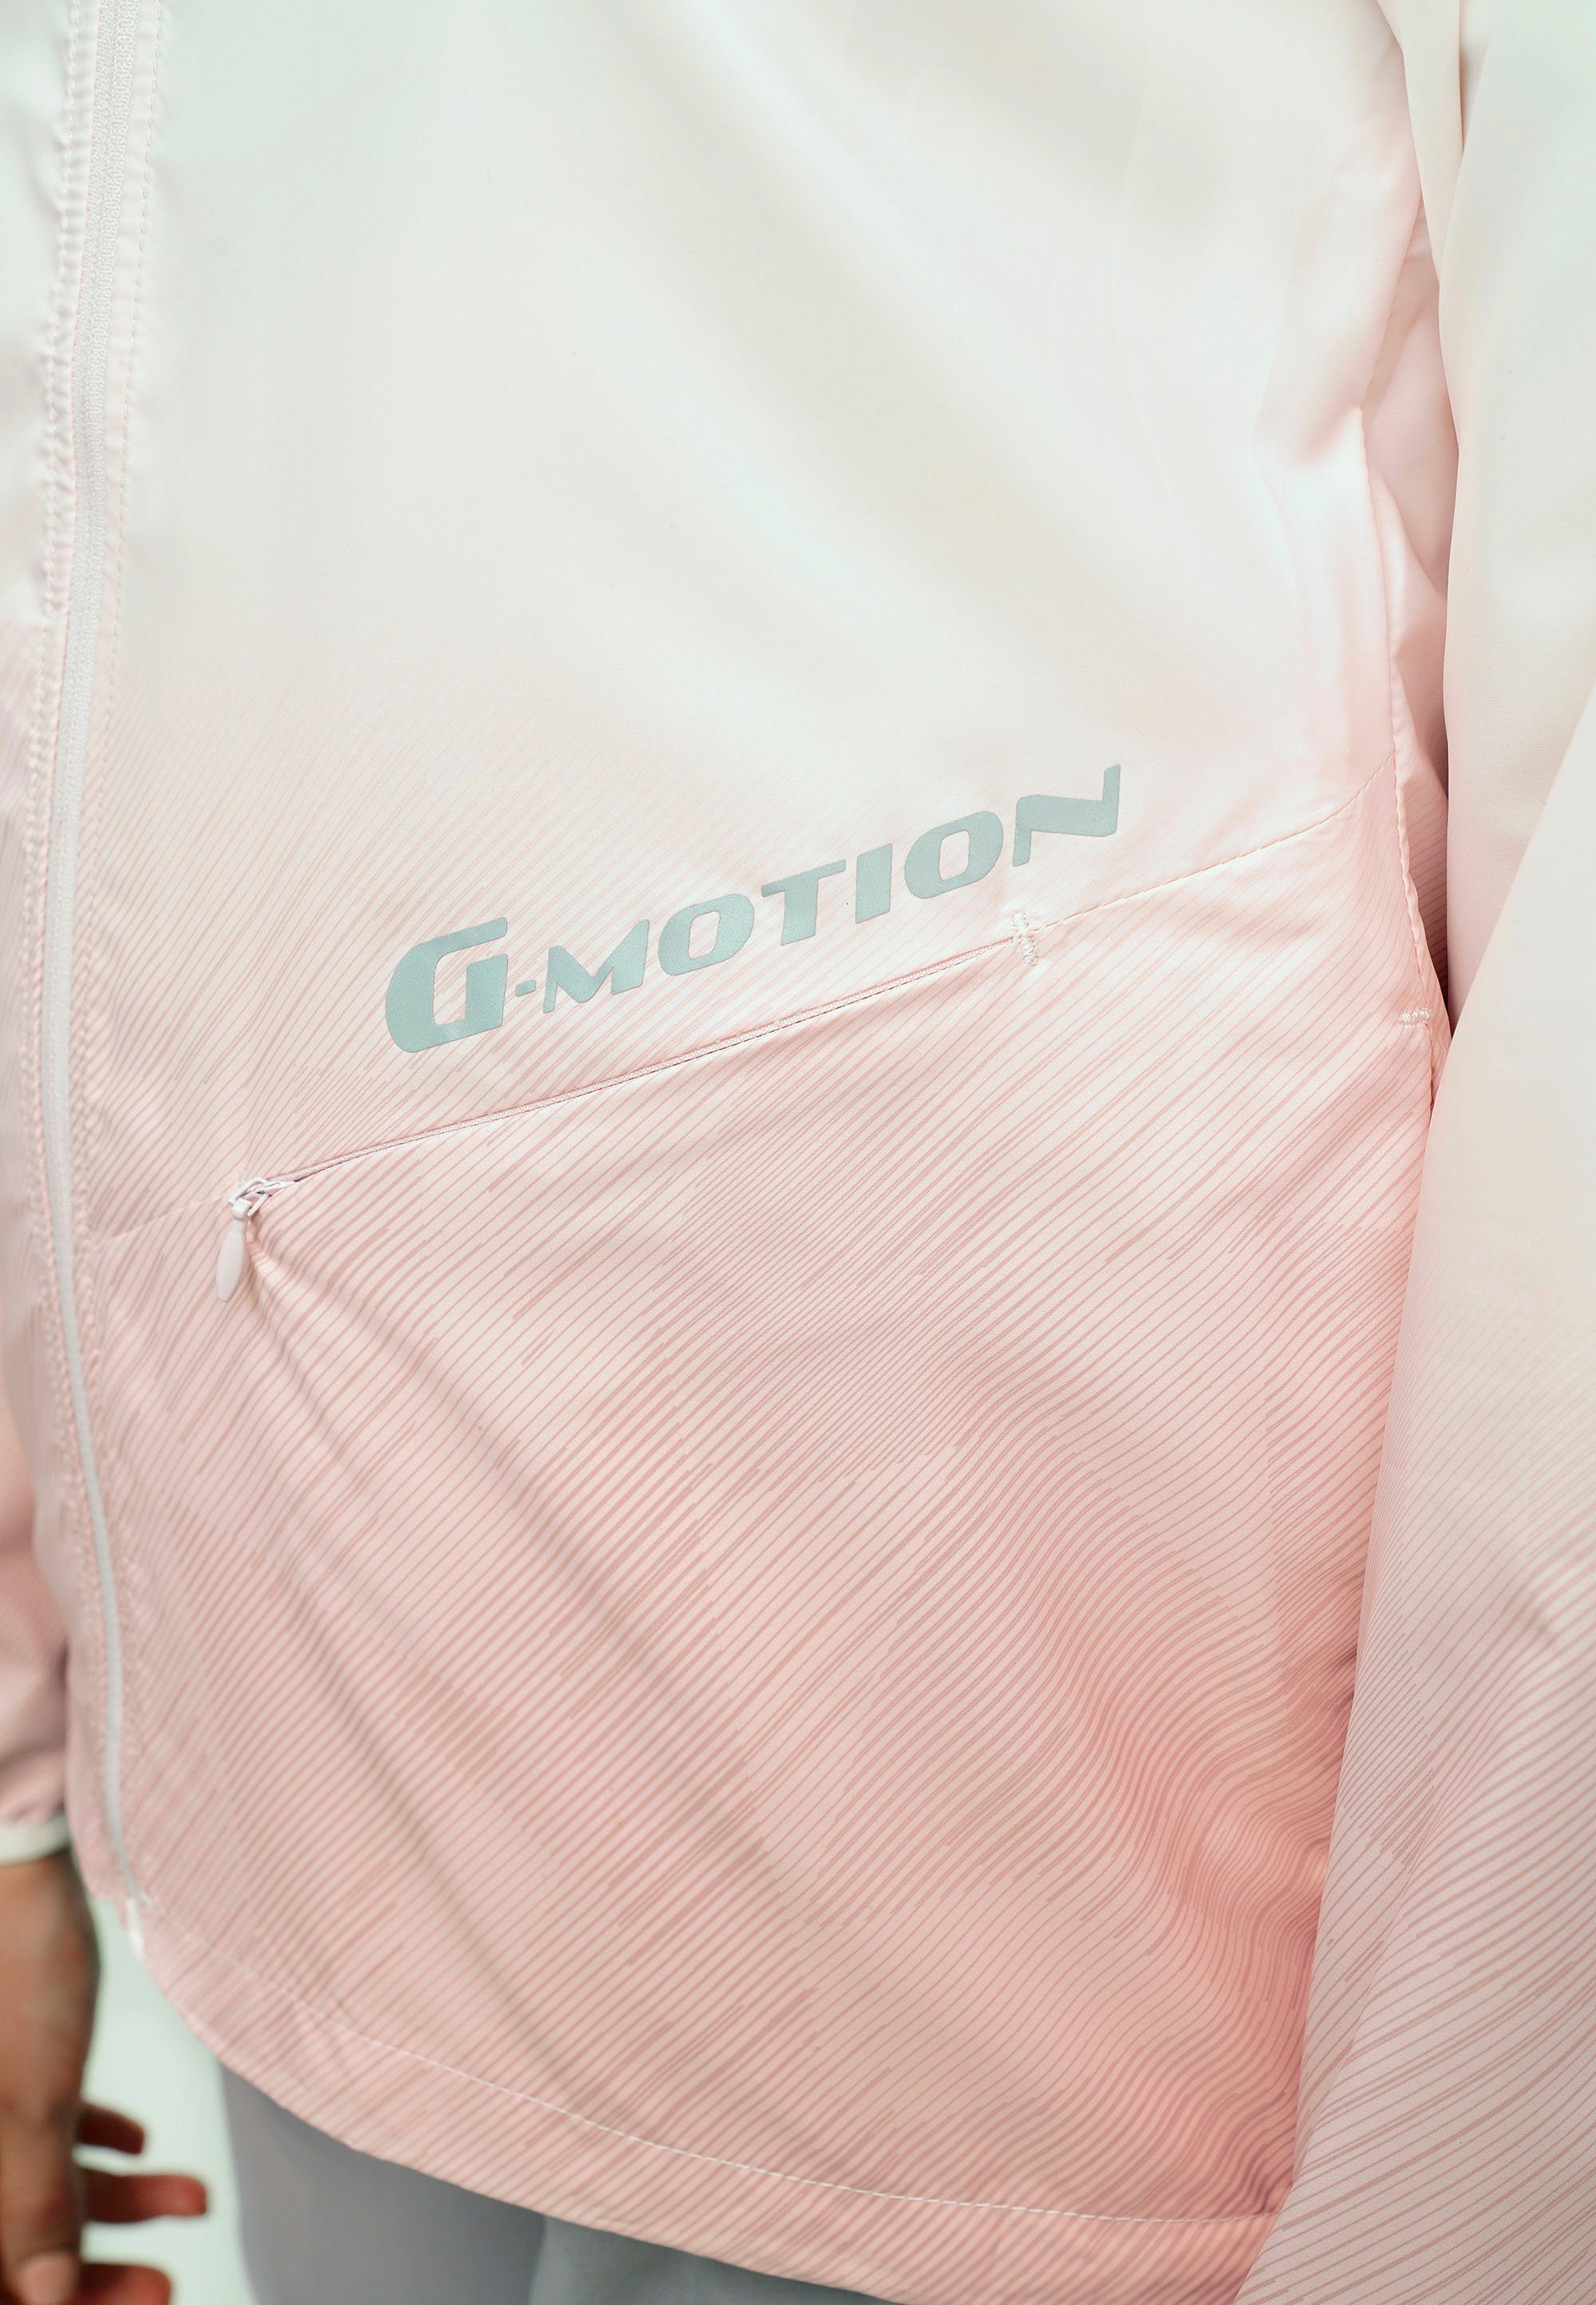 Motion G mi Outdoorjacke UV-Schutzfaktor pink-weiß GIORDANO 50+